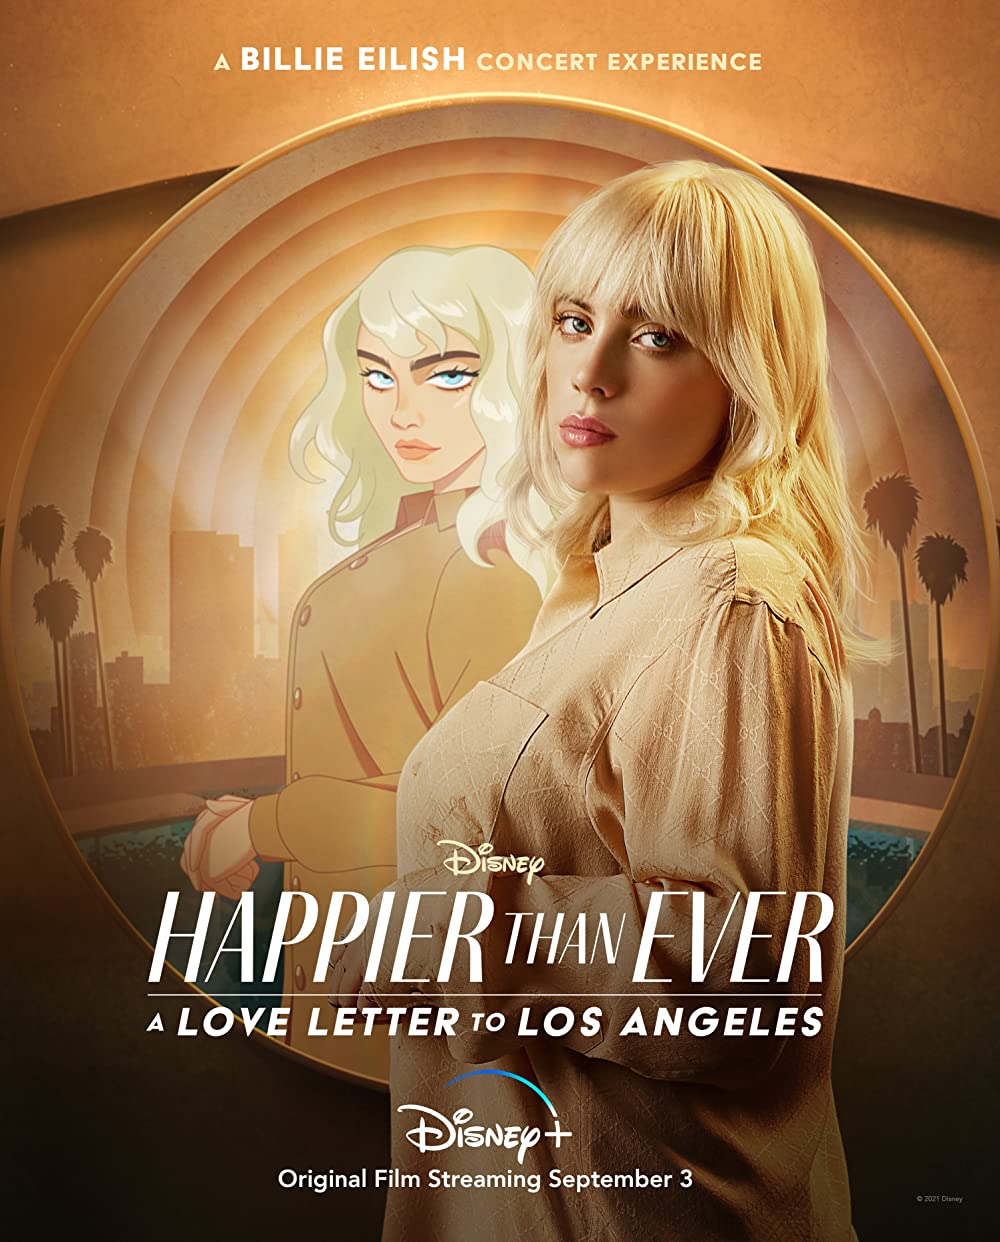 Filmbeschreibung zu Happier than Ever: Ein Liebesbrief an Los Angeles